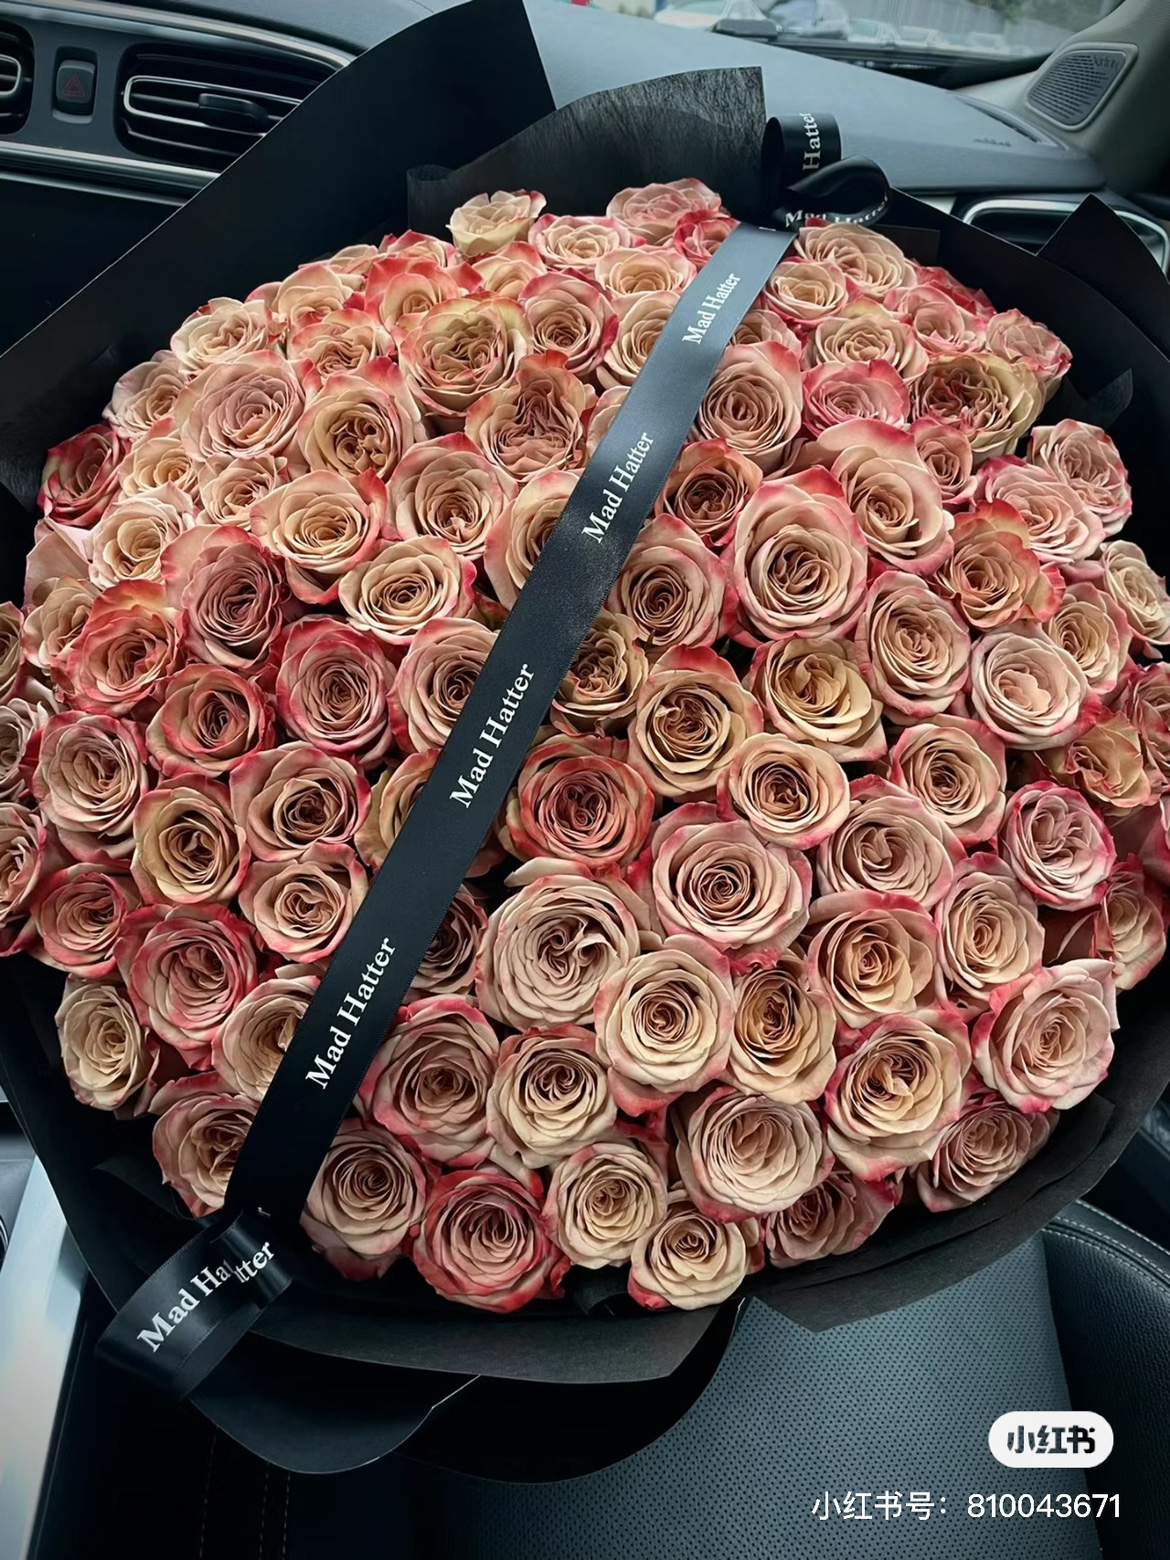 卡布奇诺月季新款迷尔花城网红玫瑰复古直立强花卉花盆栽昆明发货